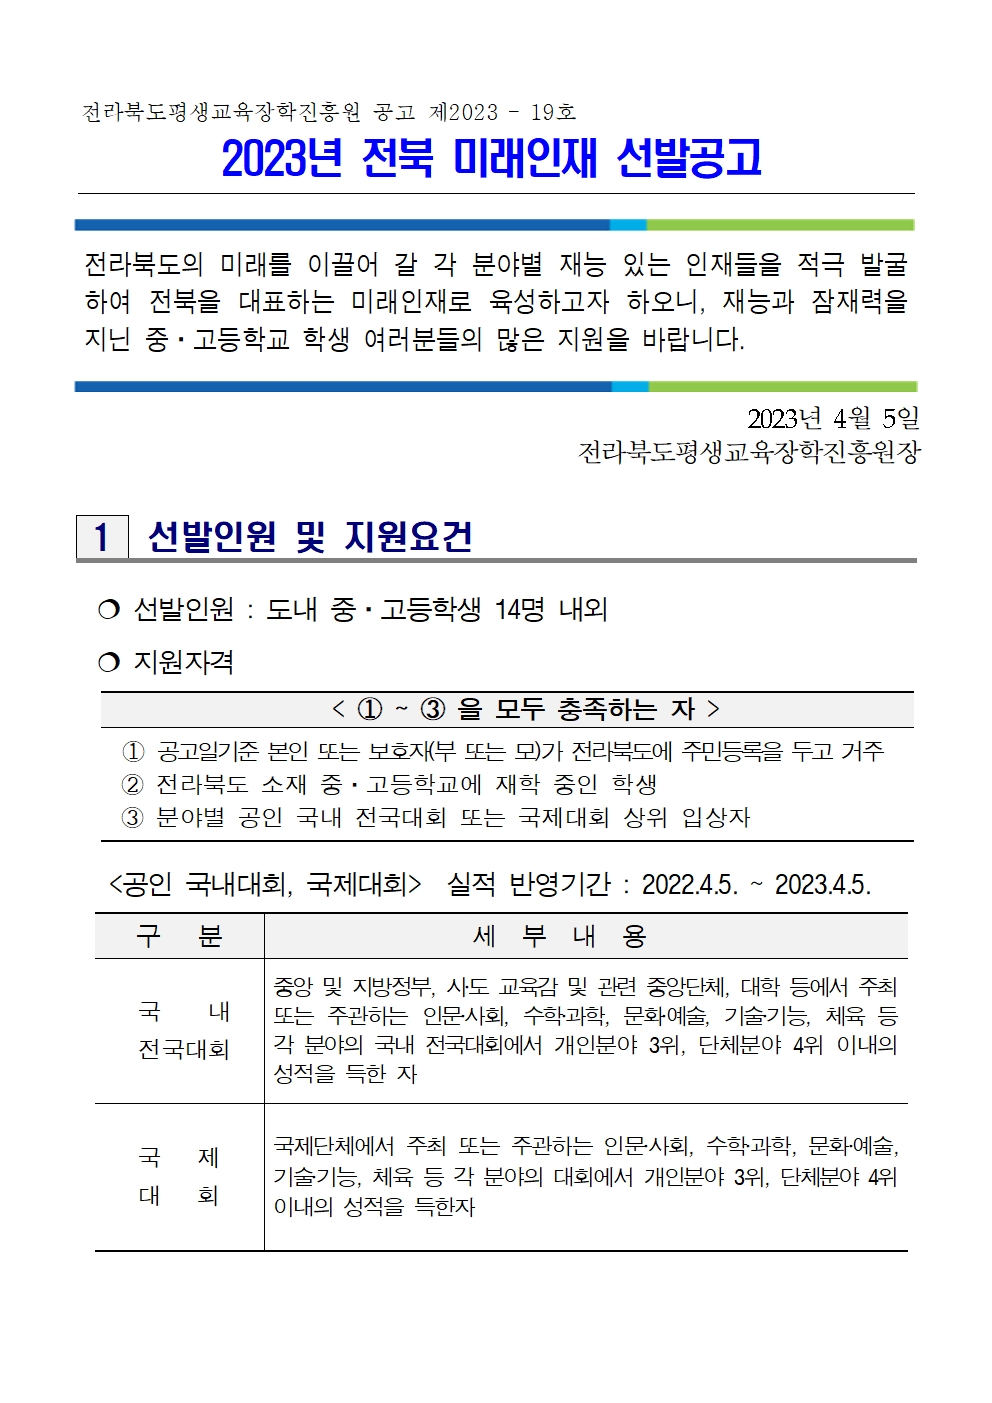 김제시 교육문화과_2023년 전북 미래인재 선발 공고(4.5.)001